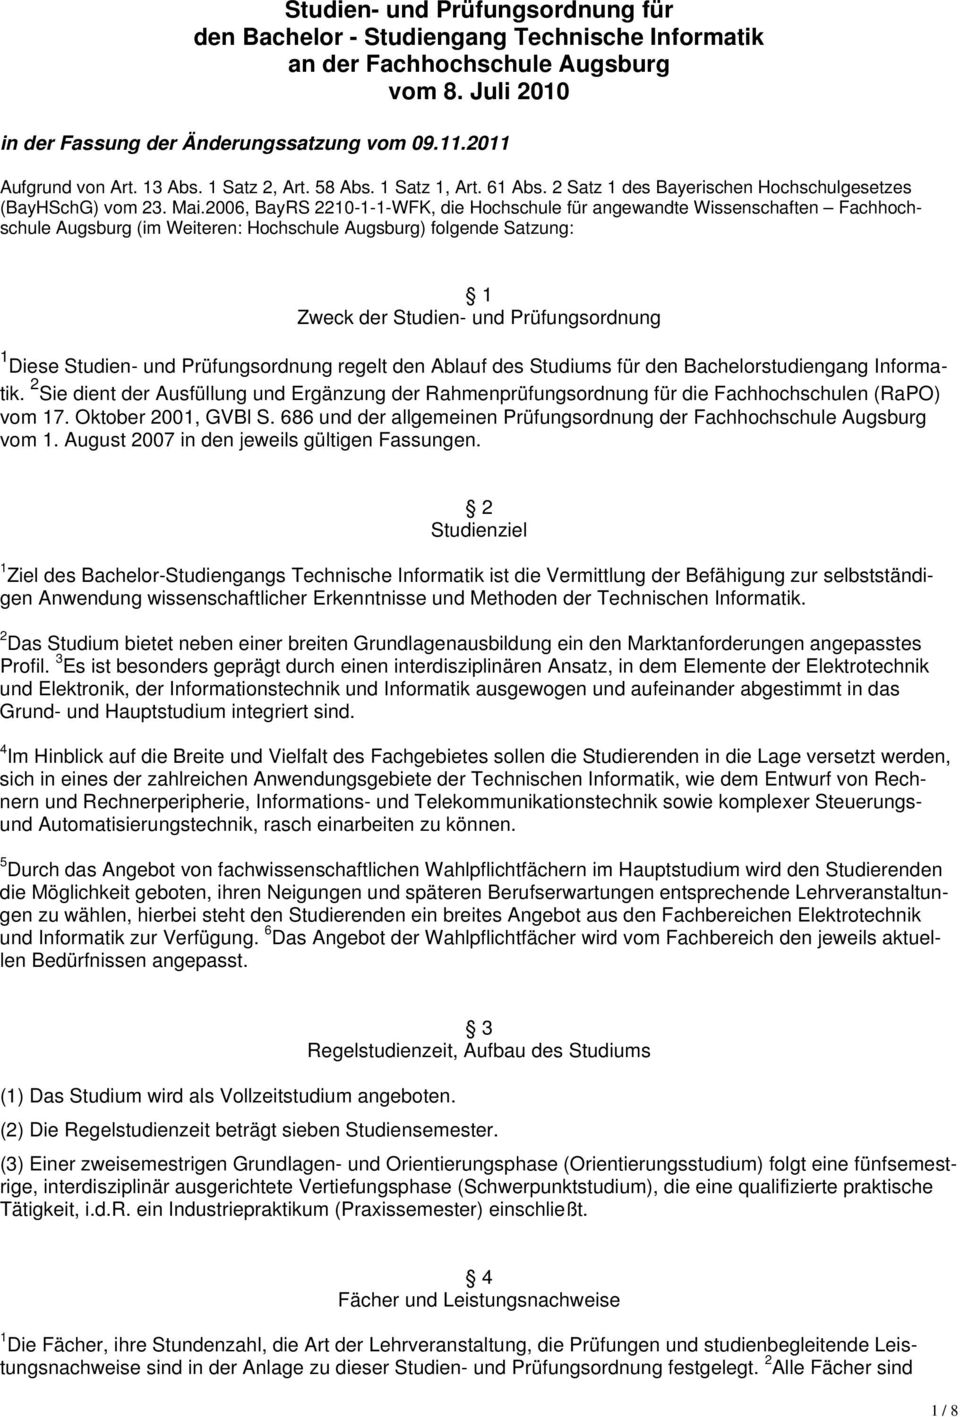 2006, BayRS 2210-1-1-WFK, die Hochschule für angewandte Wissenschaften Fachhochschule Augsburg (im Weiteren: Hochschule Augsburg) folgende Satzung: 1 Zweck der Studien- und Prüfungsordnung 1 Diese